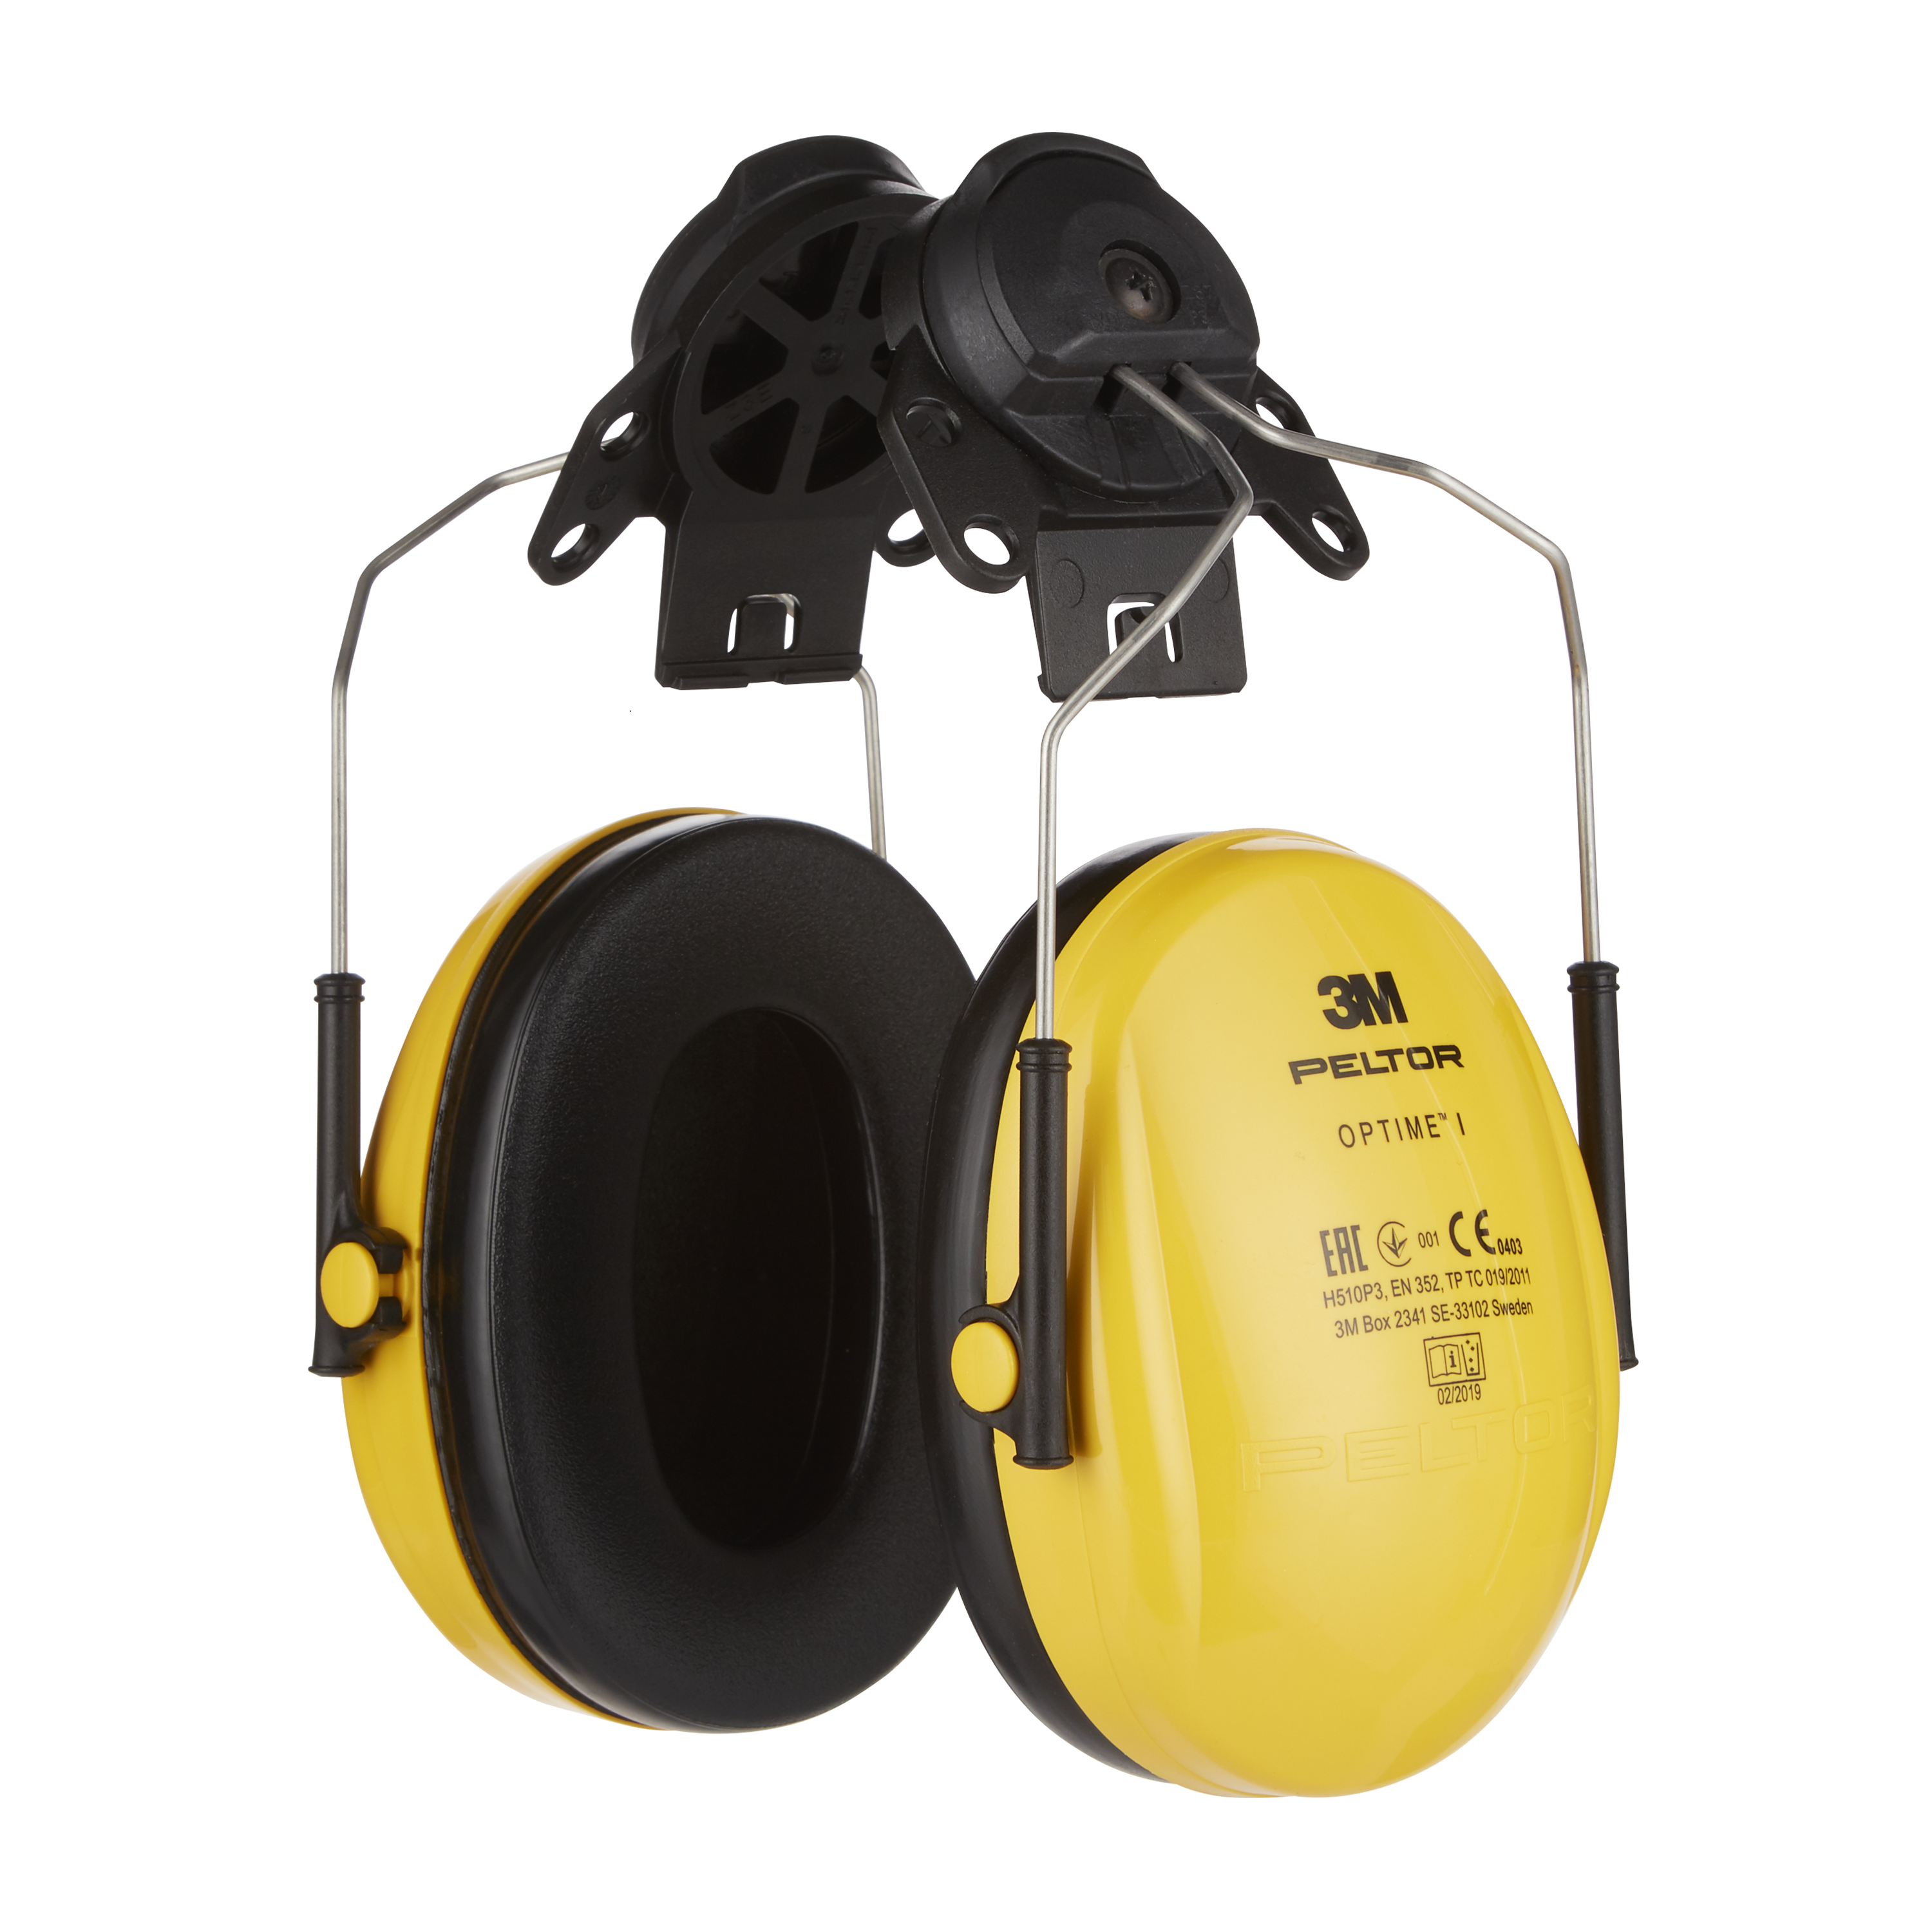 Komfort für günstig 26 dB 3M H510P3, kaufen SNR - Peltor gelb, Helm, Optime | = I, Kapselgehörschutz